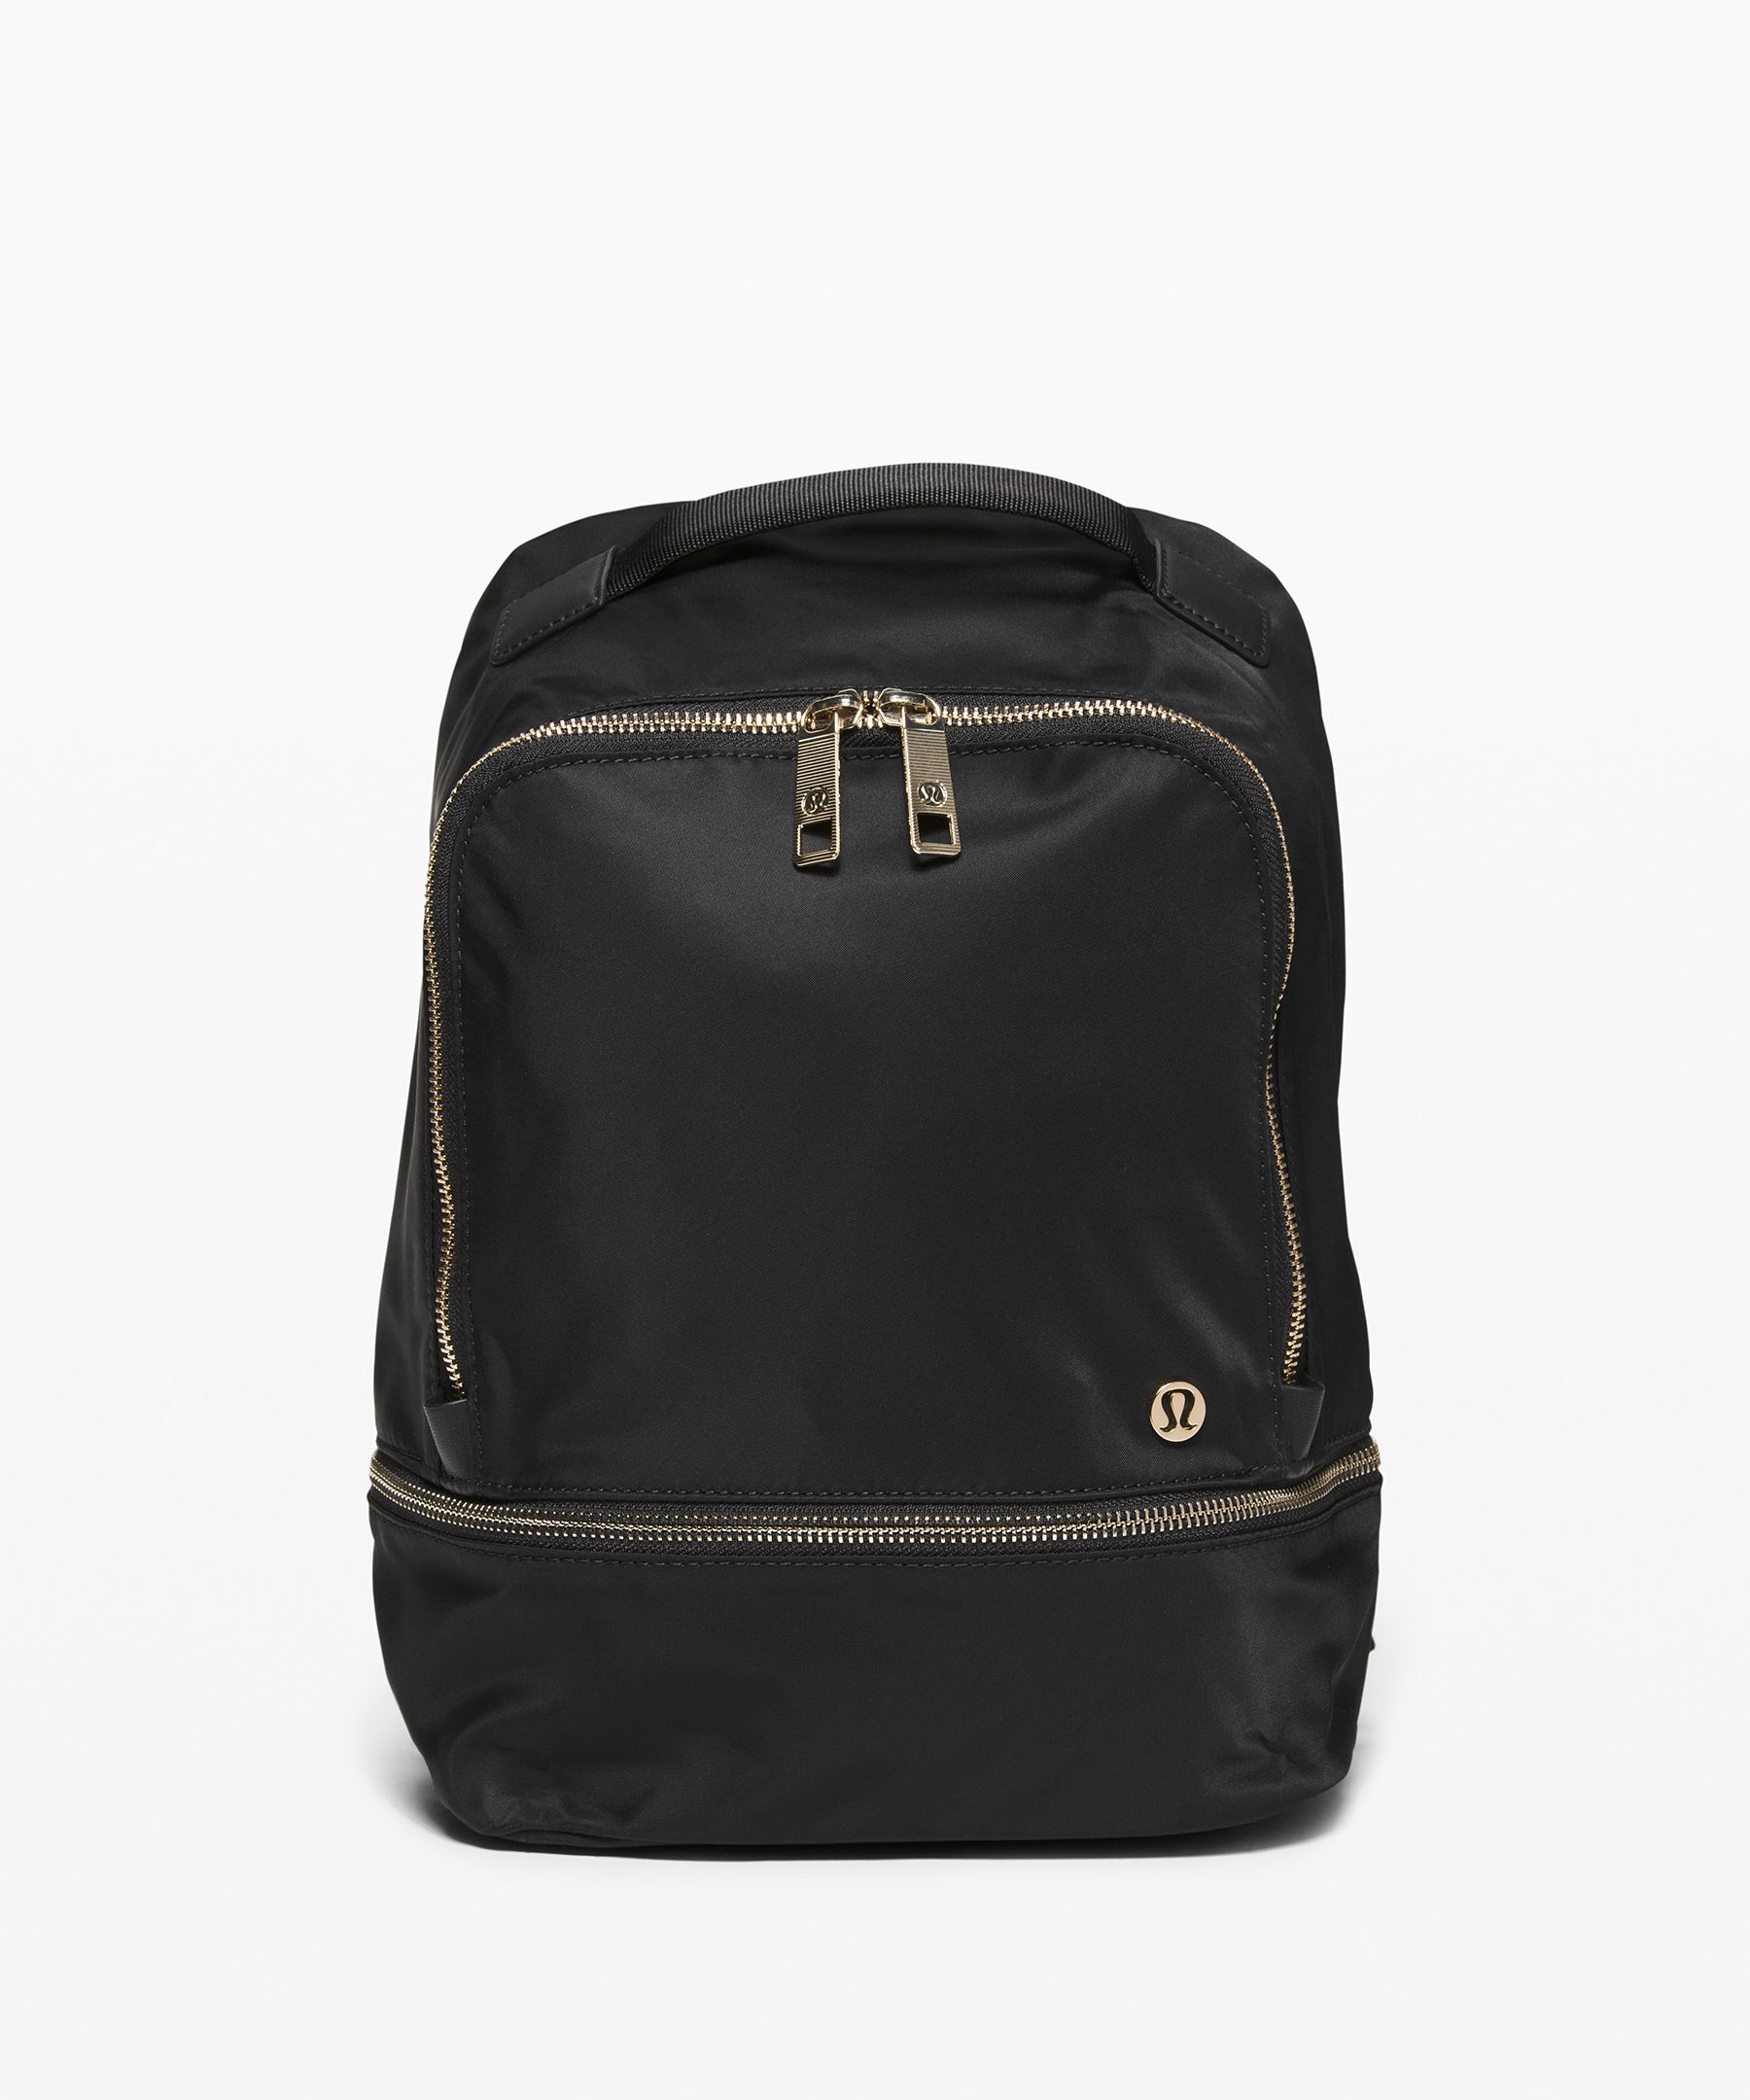 Lululemon City Adventurer Backpack 10l In Black/gold